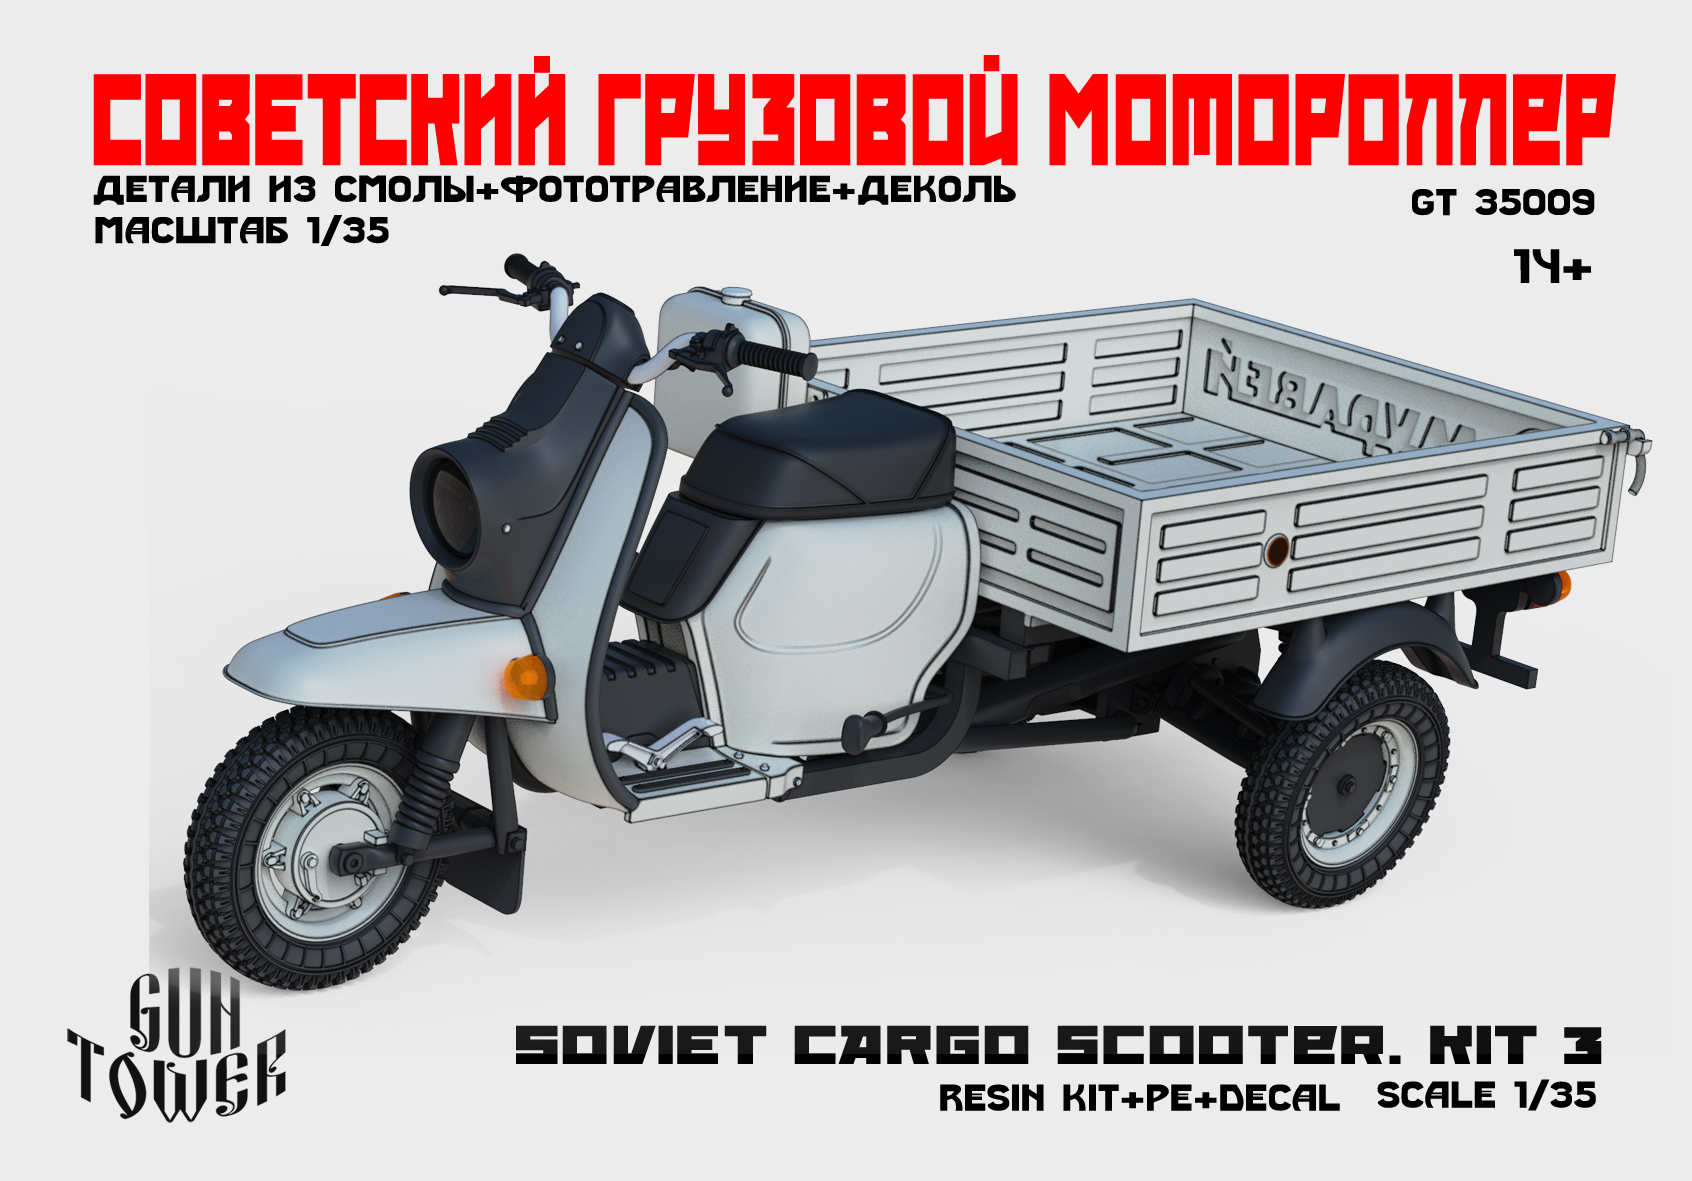 Советский грузовой мотороллер. Кит 3.